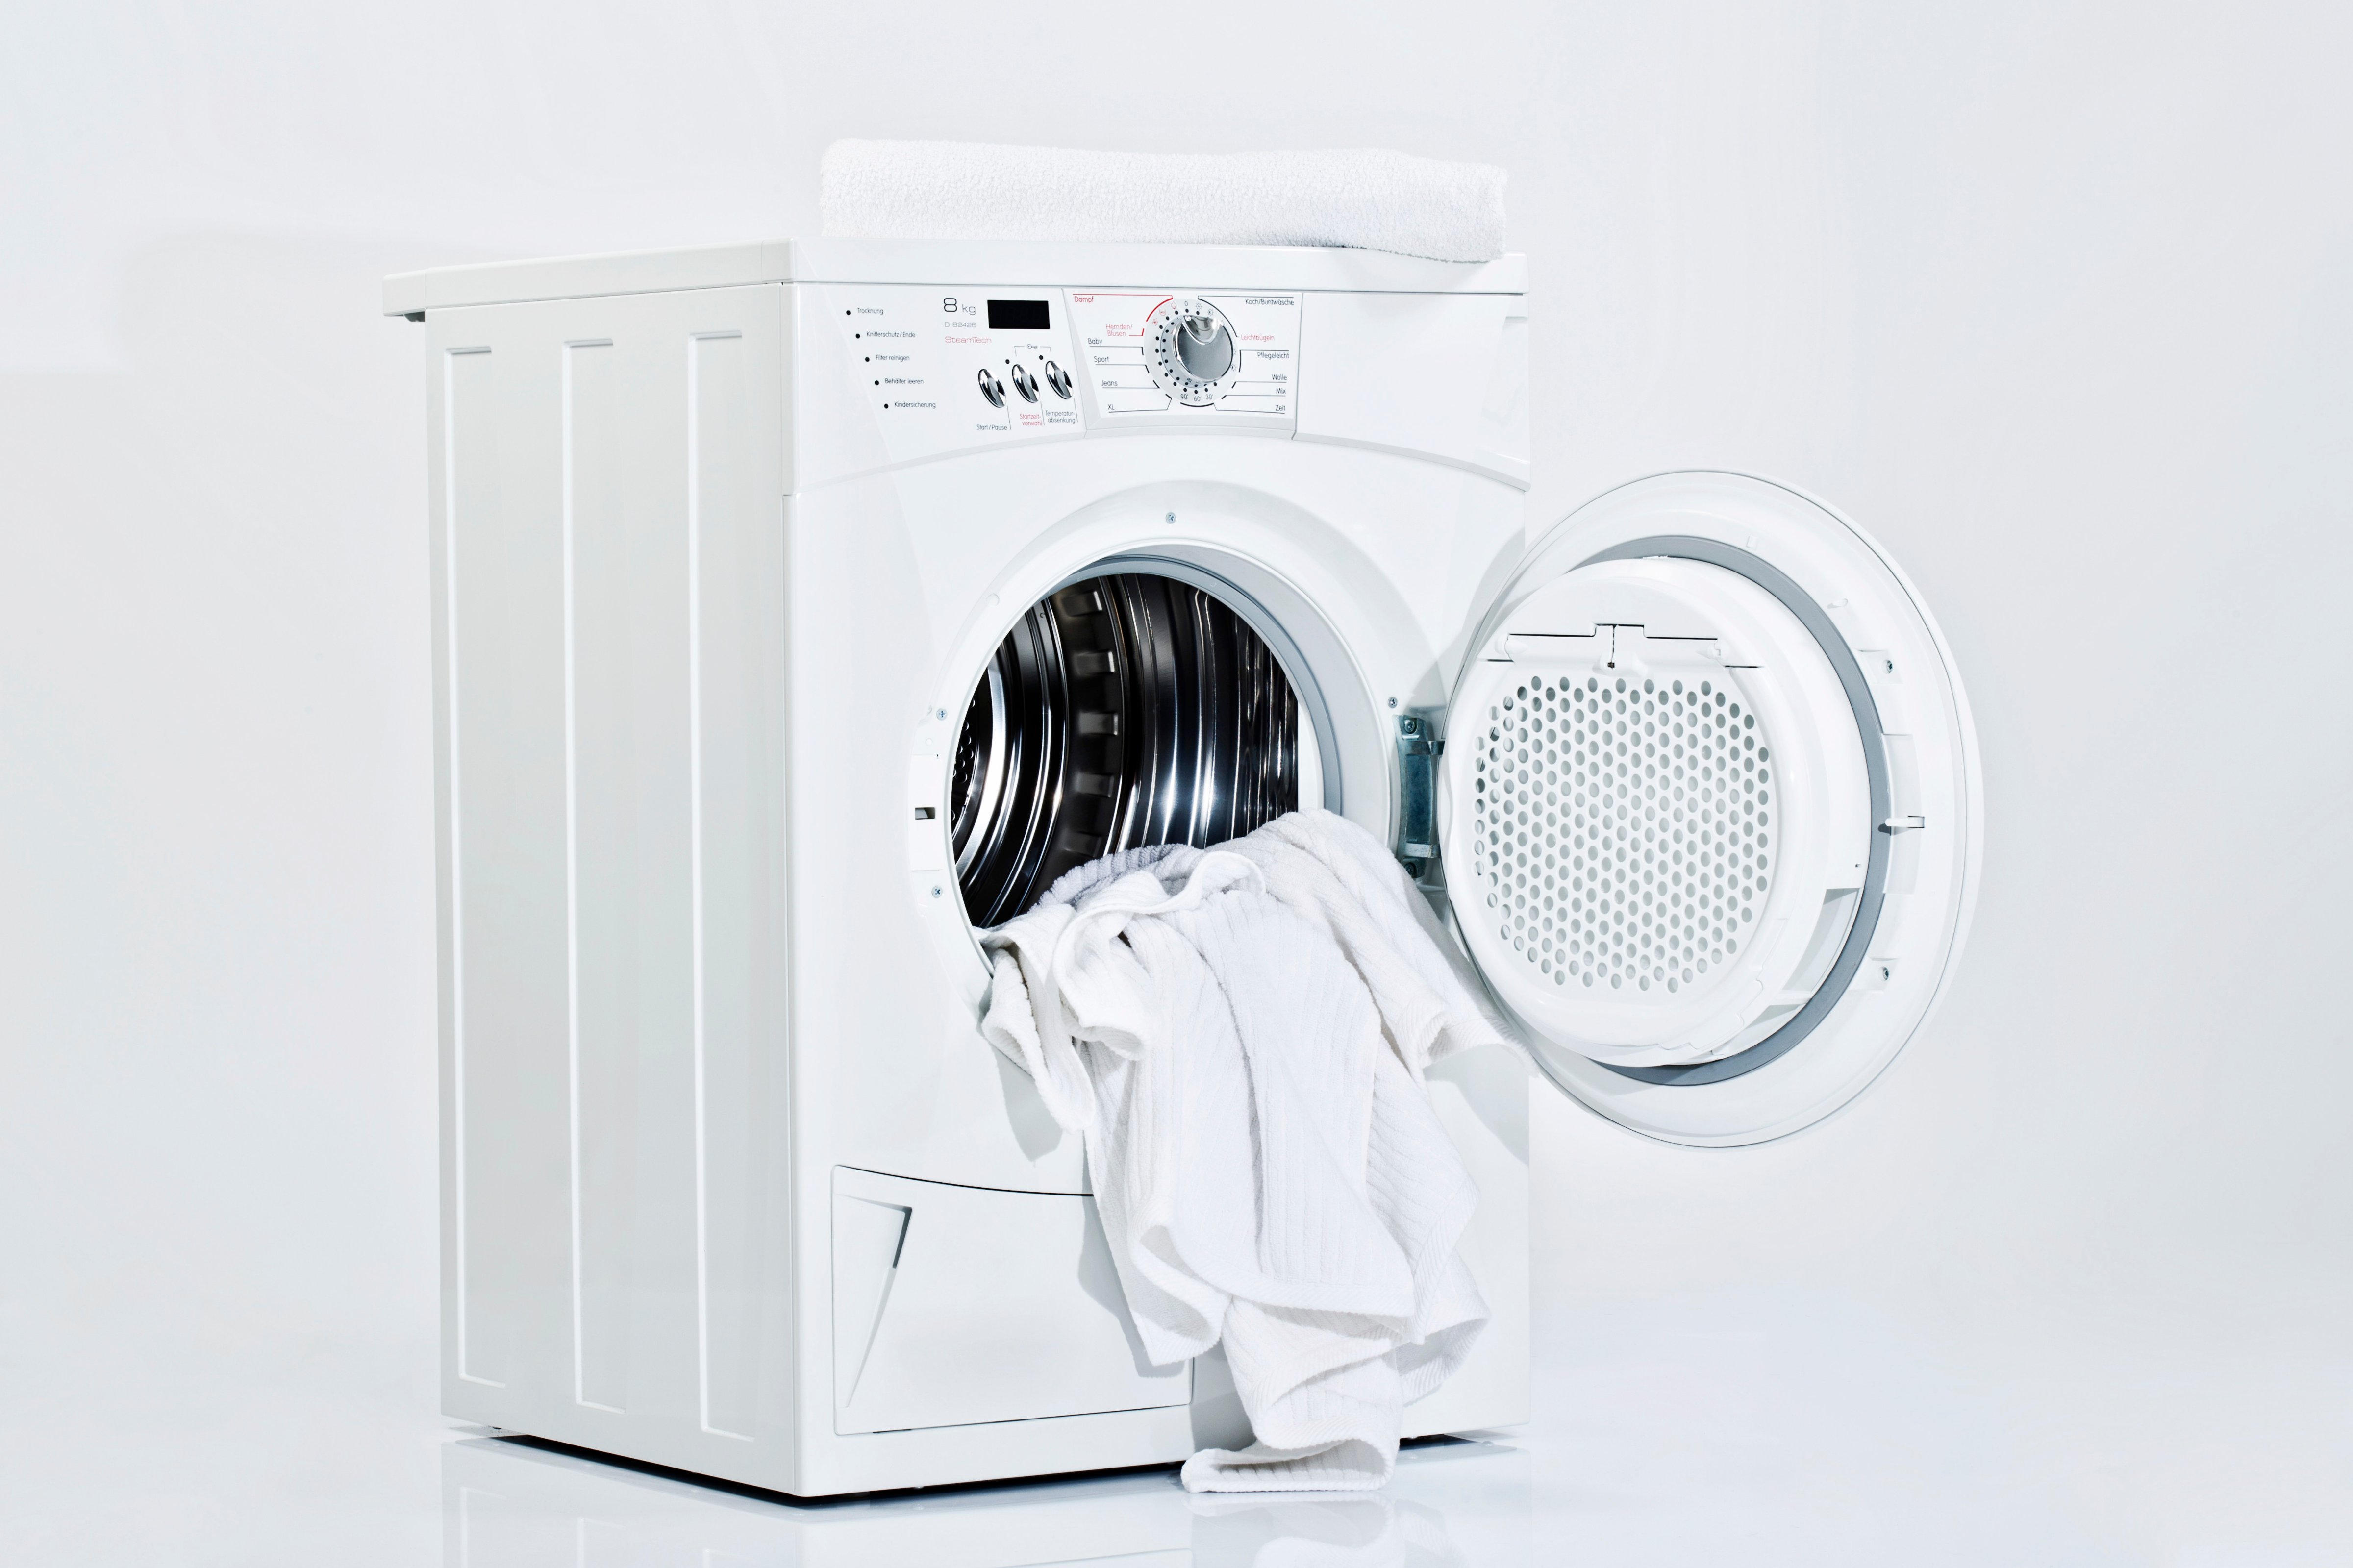 Washing machine on white background